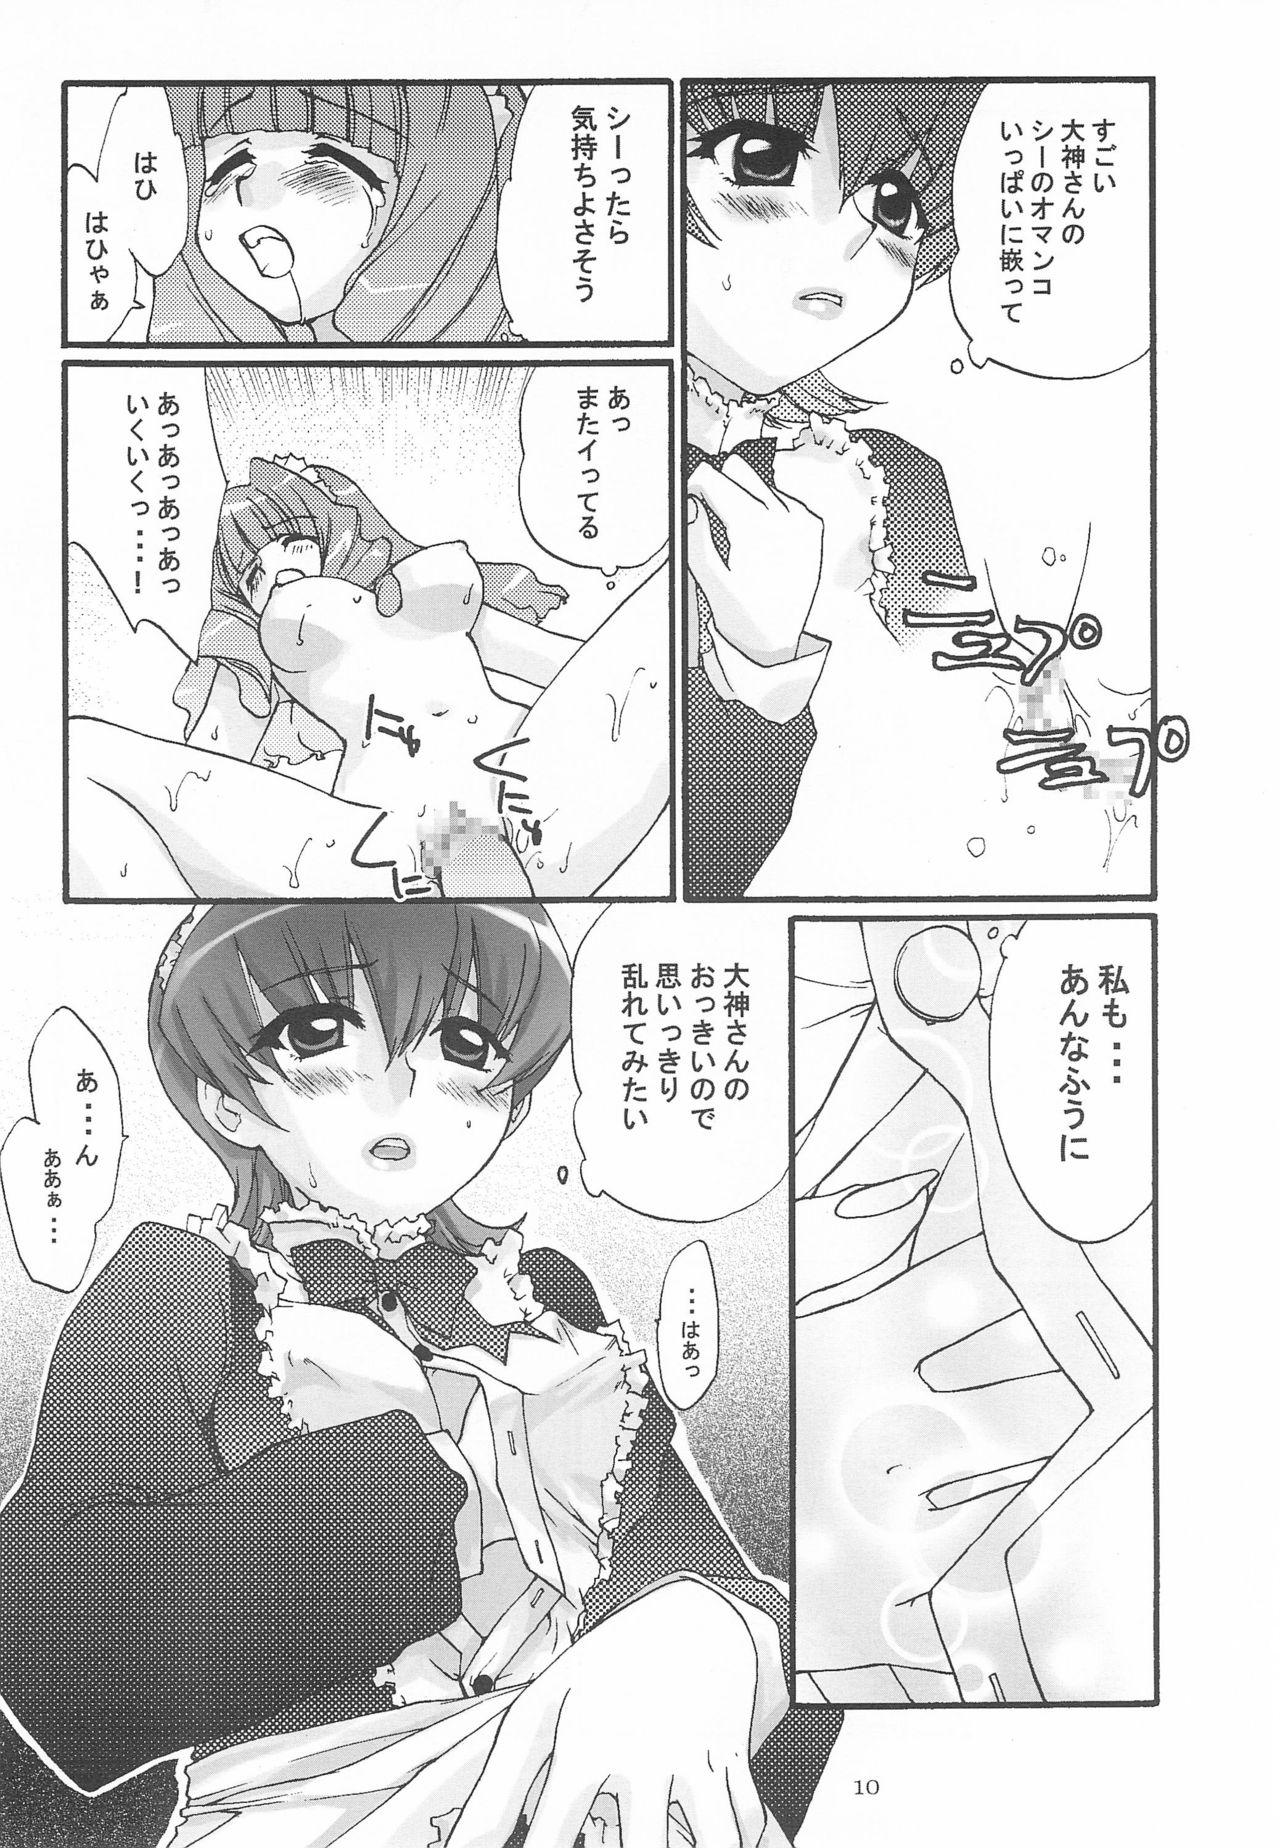 Hard Cock Alleluia - Sakura taisen | sakura wars Amature Sex - Page 12